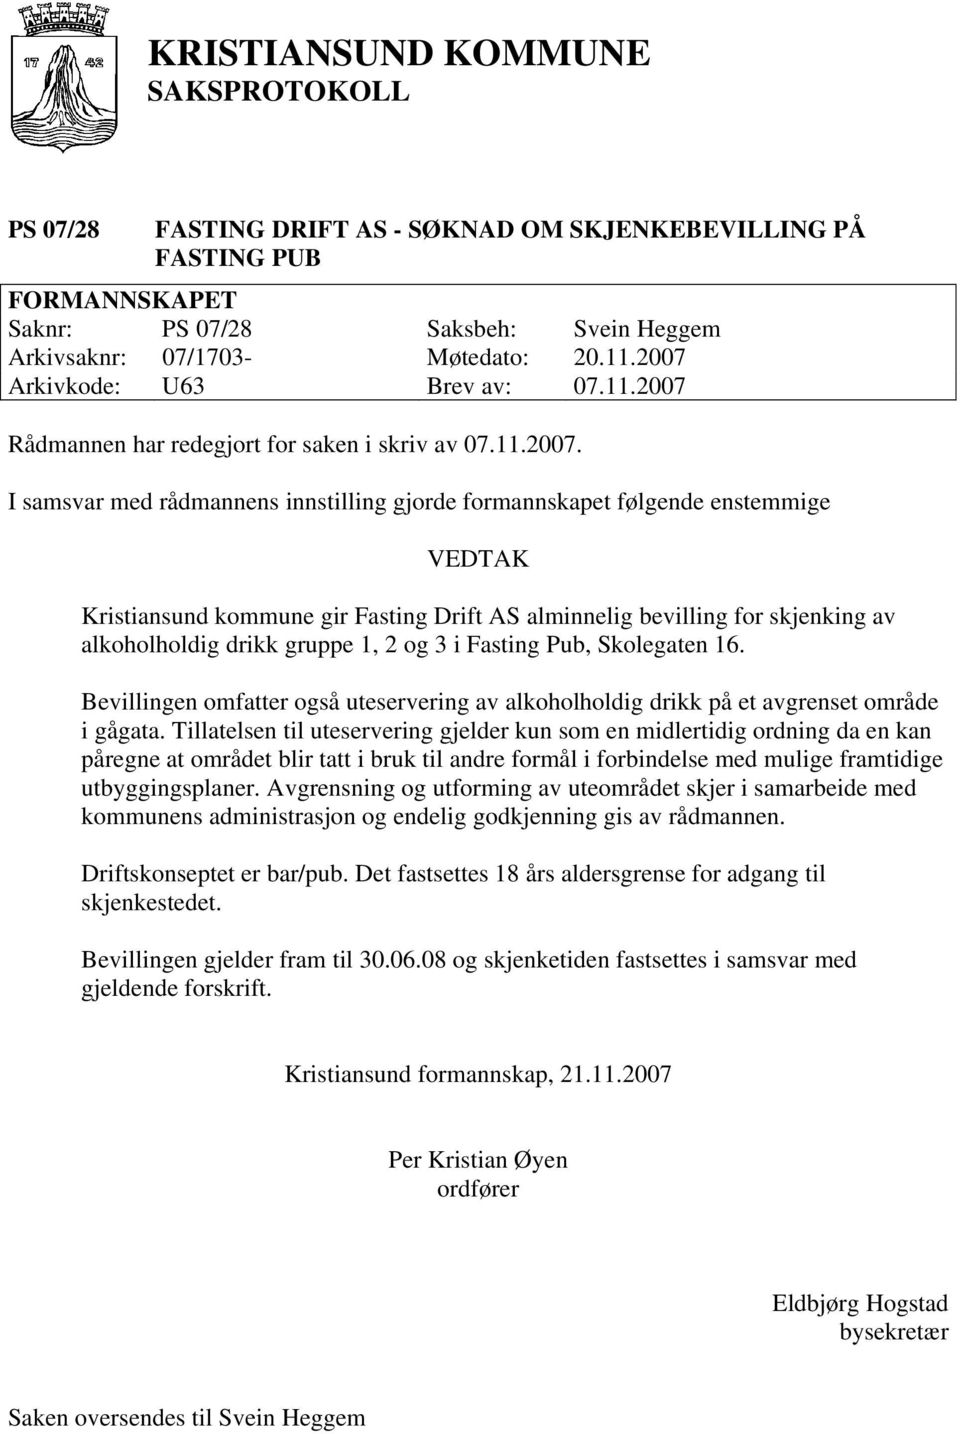 I samsvar med rådmannens innstilling gjorde formannskapet følgende enstemmige Kristiansund kommune gir Fasting Drift AS alminnelig bevilling for skjenking av alkoholholdig drikk gruppe 1, 2 og 3 i